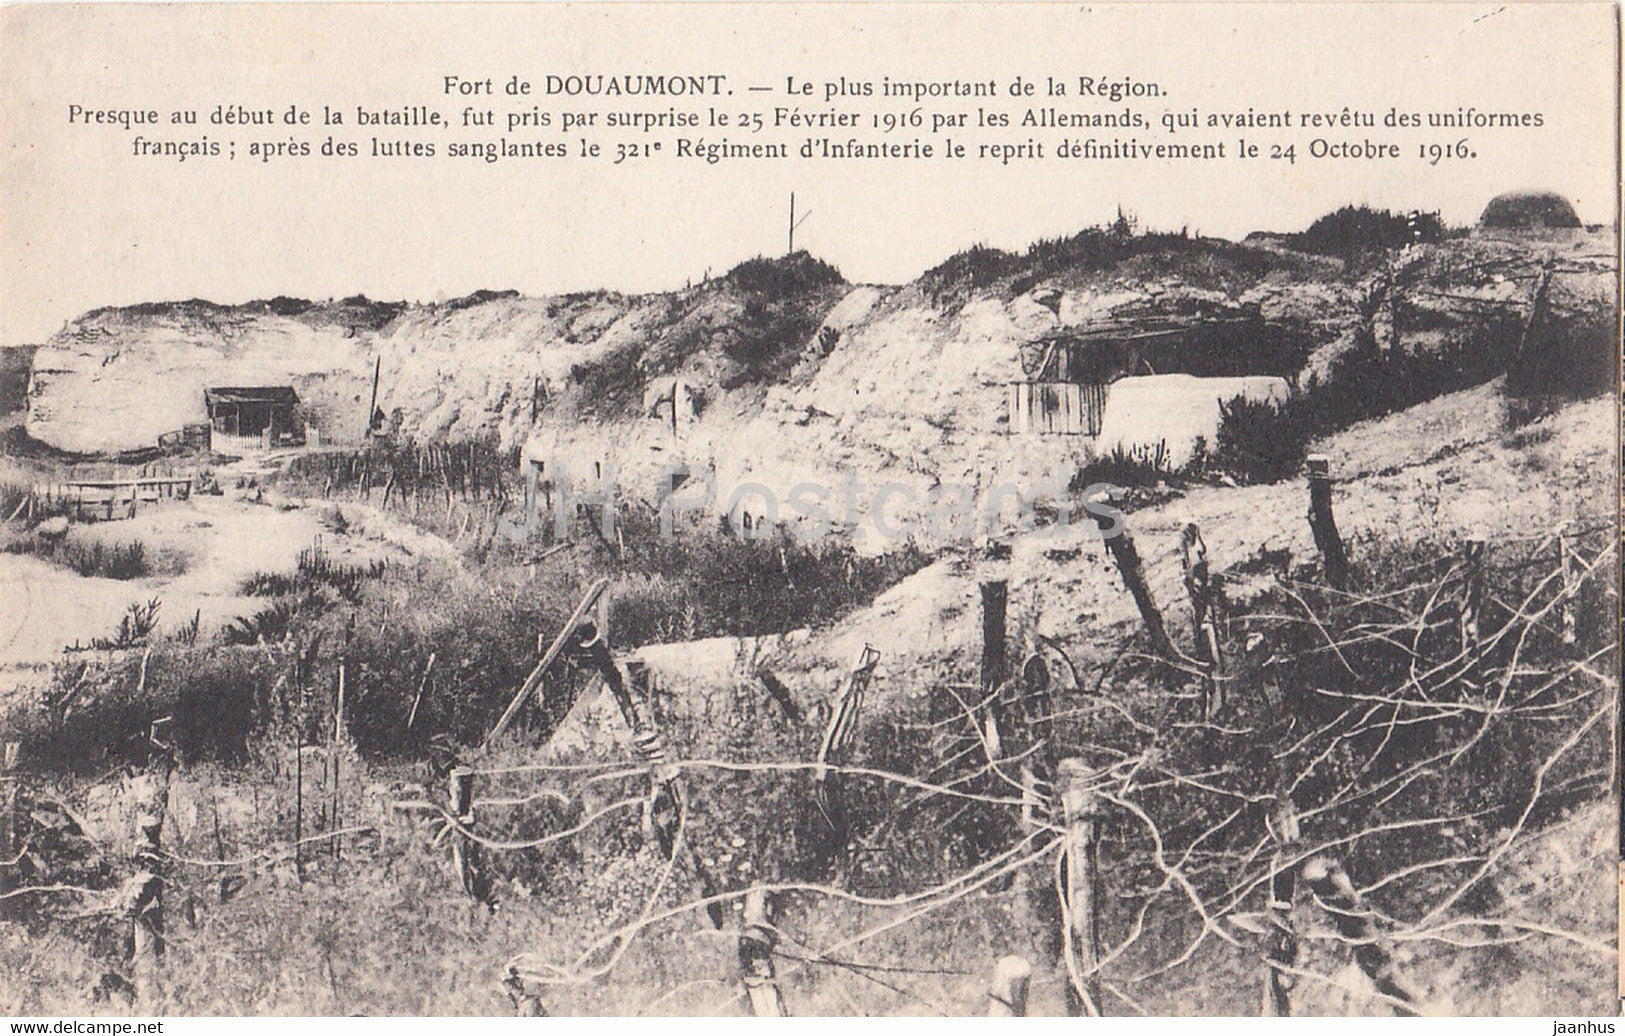 Fort de Douaumont - Le plus important de la Region - military - WWI - old postcard - France - unused - JH Postcards